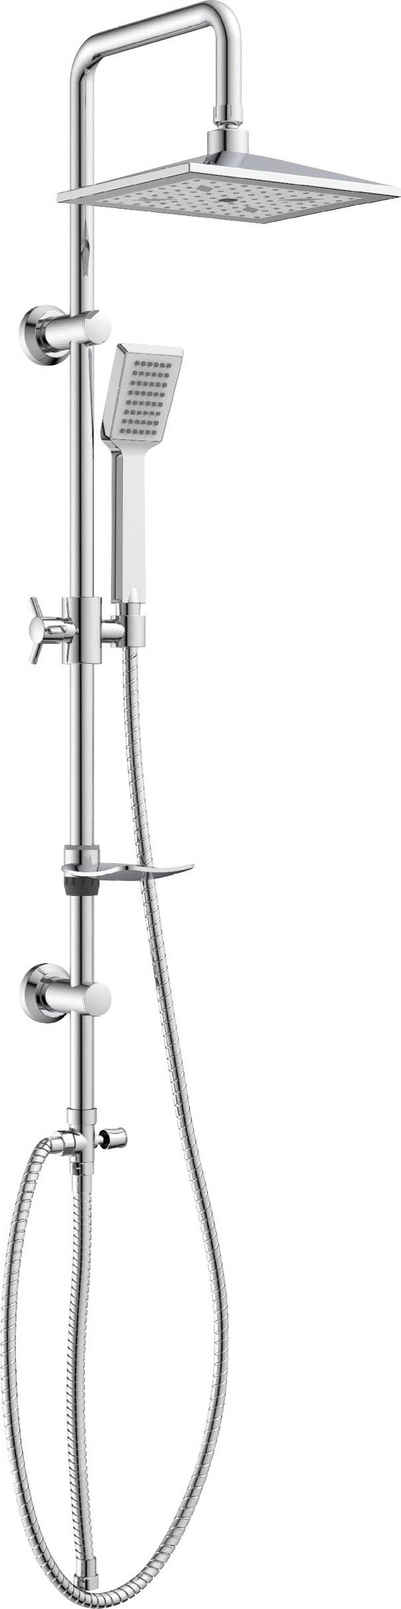 Eisl Duschsystem »EASY COOL«, Höhe 95 cm, Regendusche ohne Armatur, Duschsystem mit Seifenschale, Duschbrause